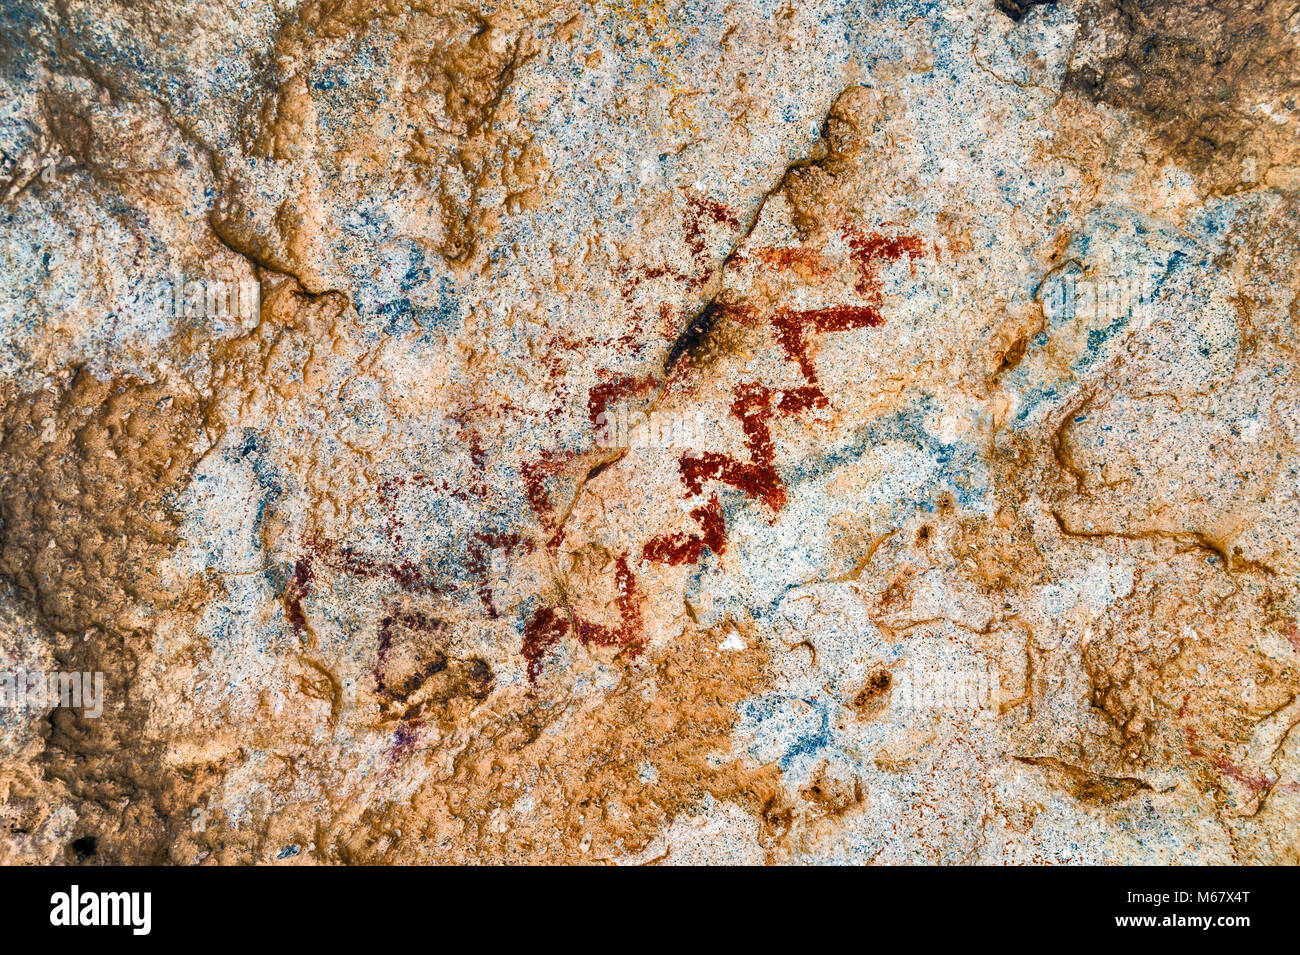 Abstract pictogrammes de milieu/fin style archaïque (3000 av. J.-C.-450 après J.-C.), caverne dans région de East Mountain, Hueco Tanks State Park, Texas, États-Unis Banque D'Images